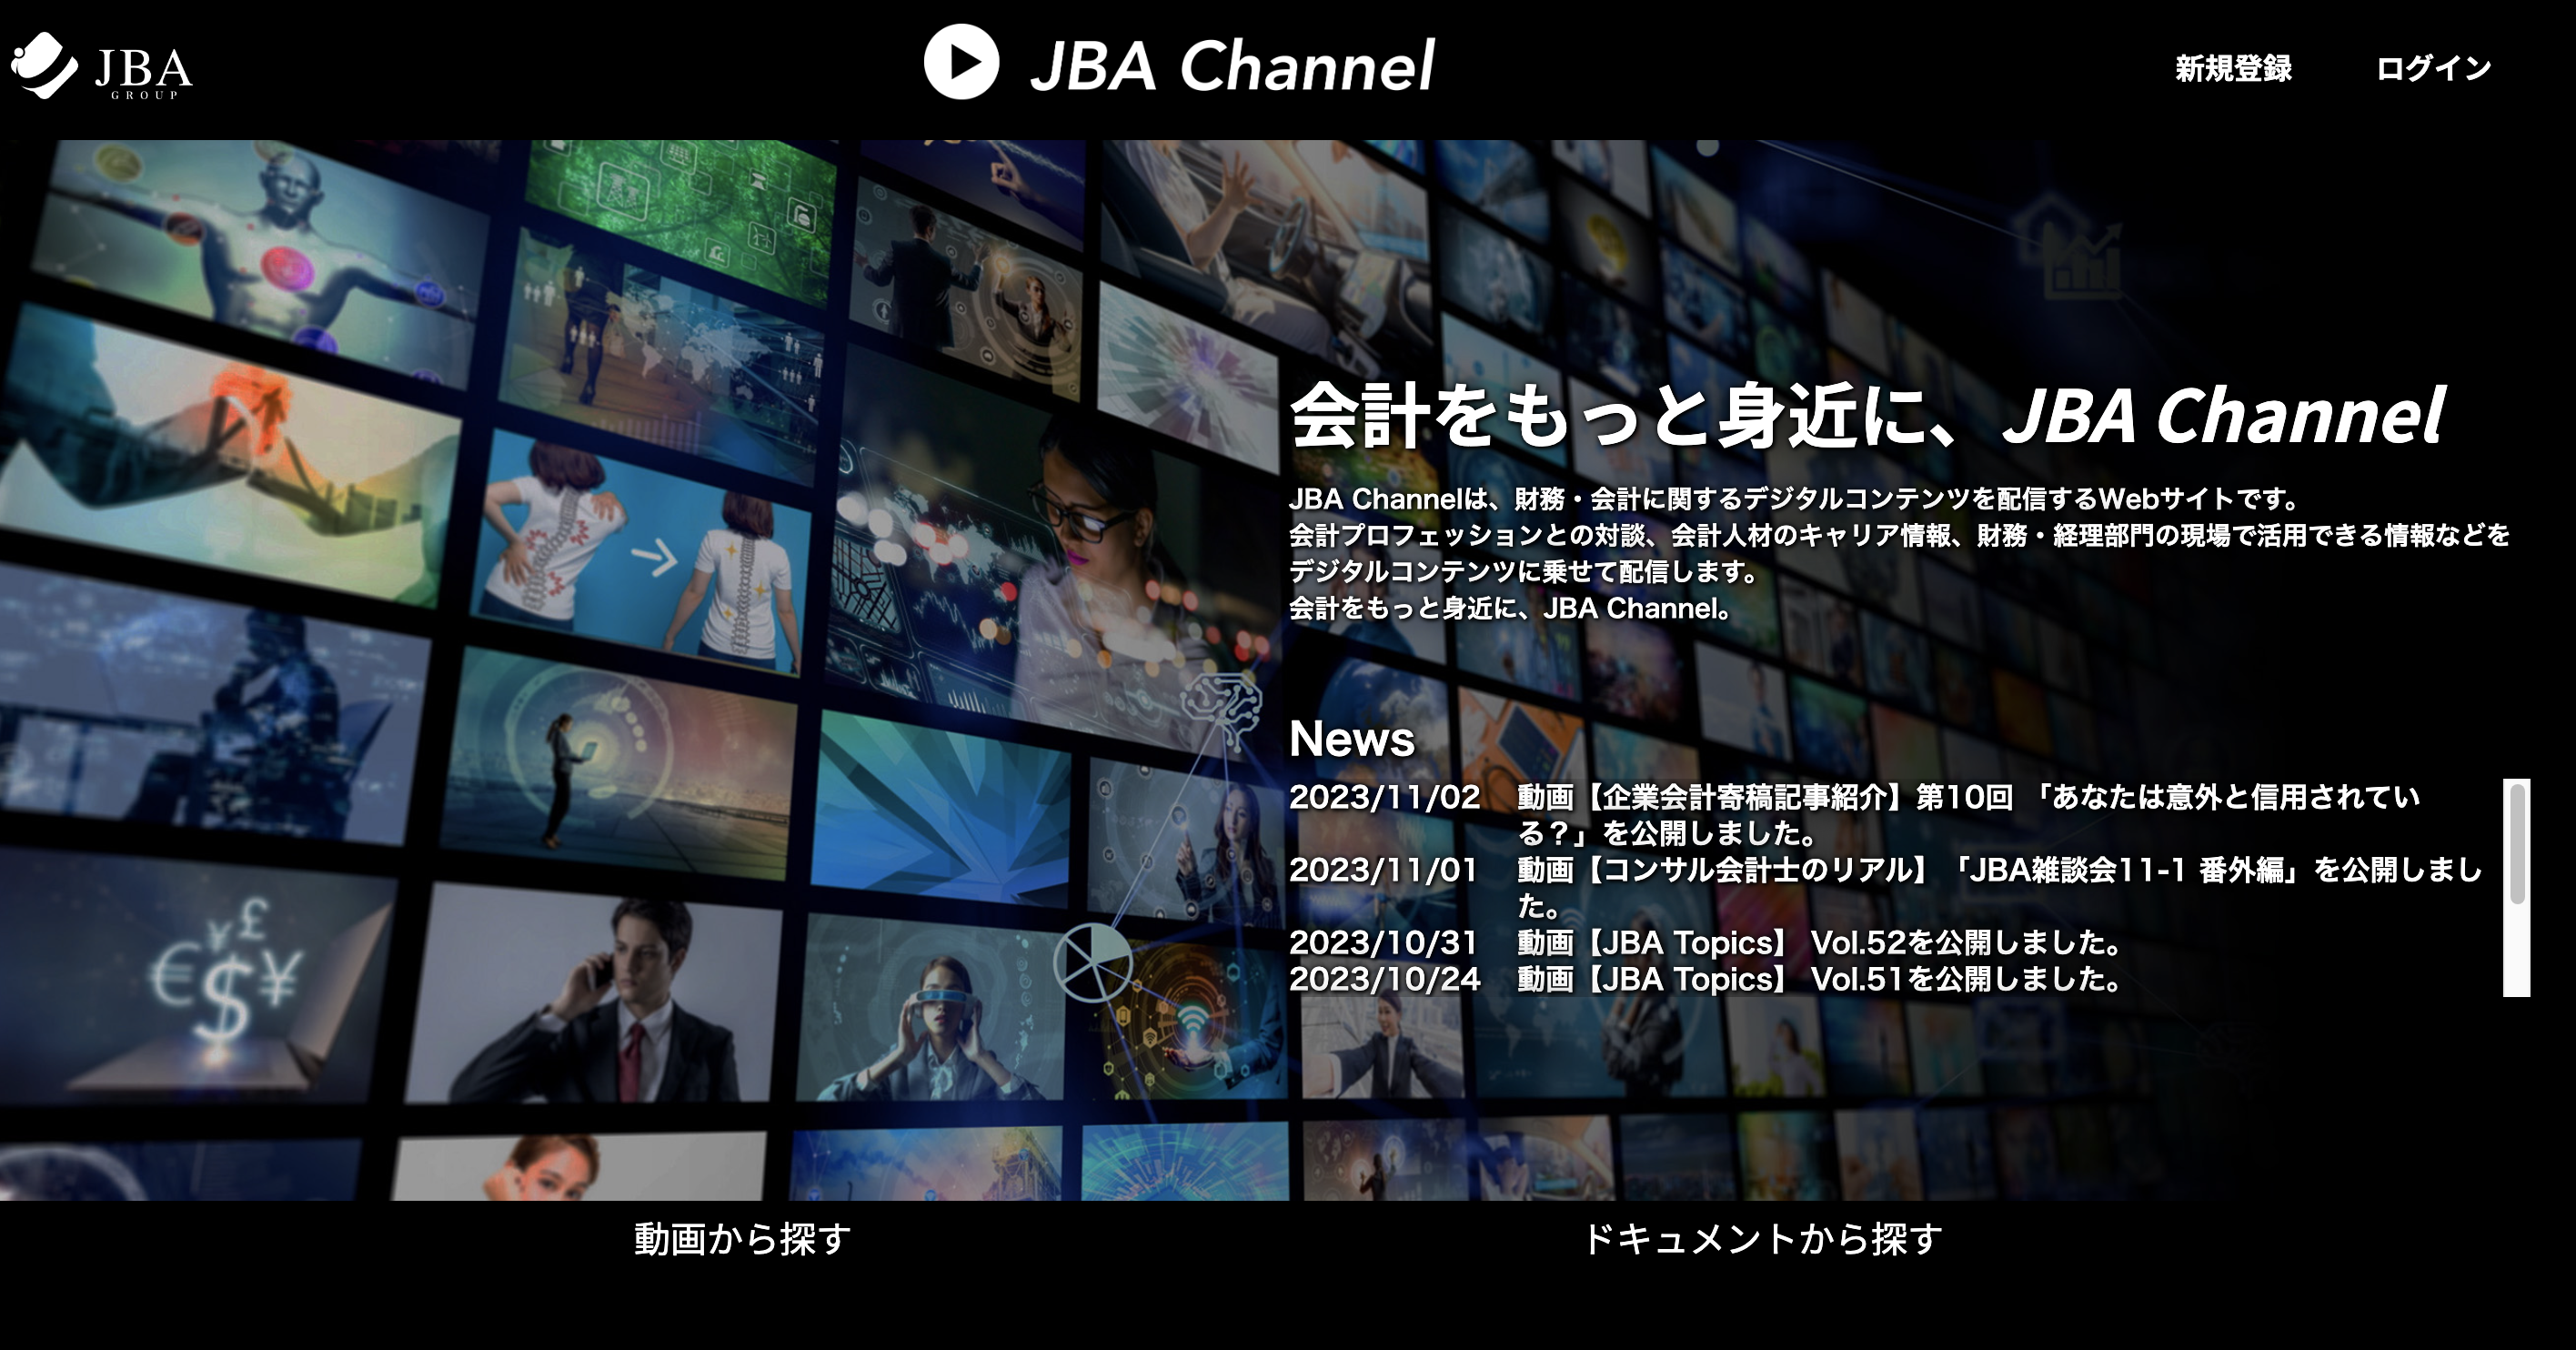 JBA Channel